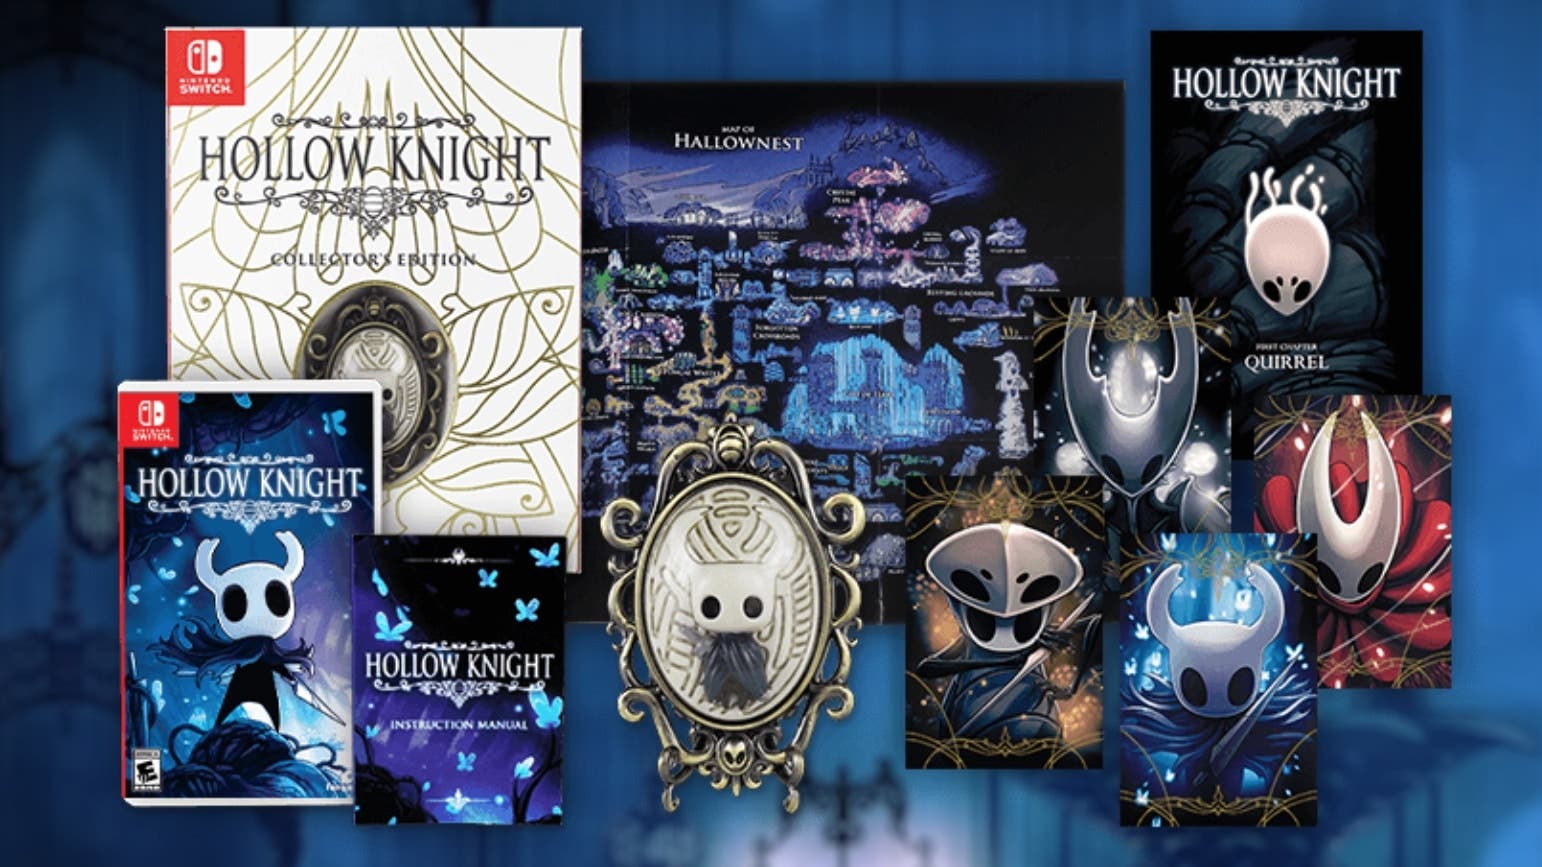 Fangamer vuelve a poner a la venta la edición coleccionista de Hollow Knight arreglando el error de sus cartuchos